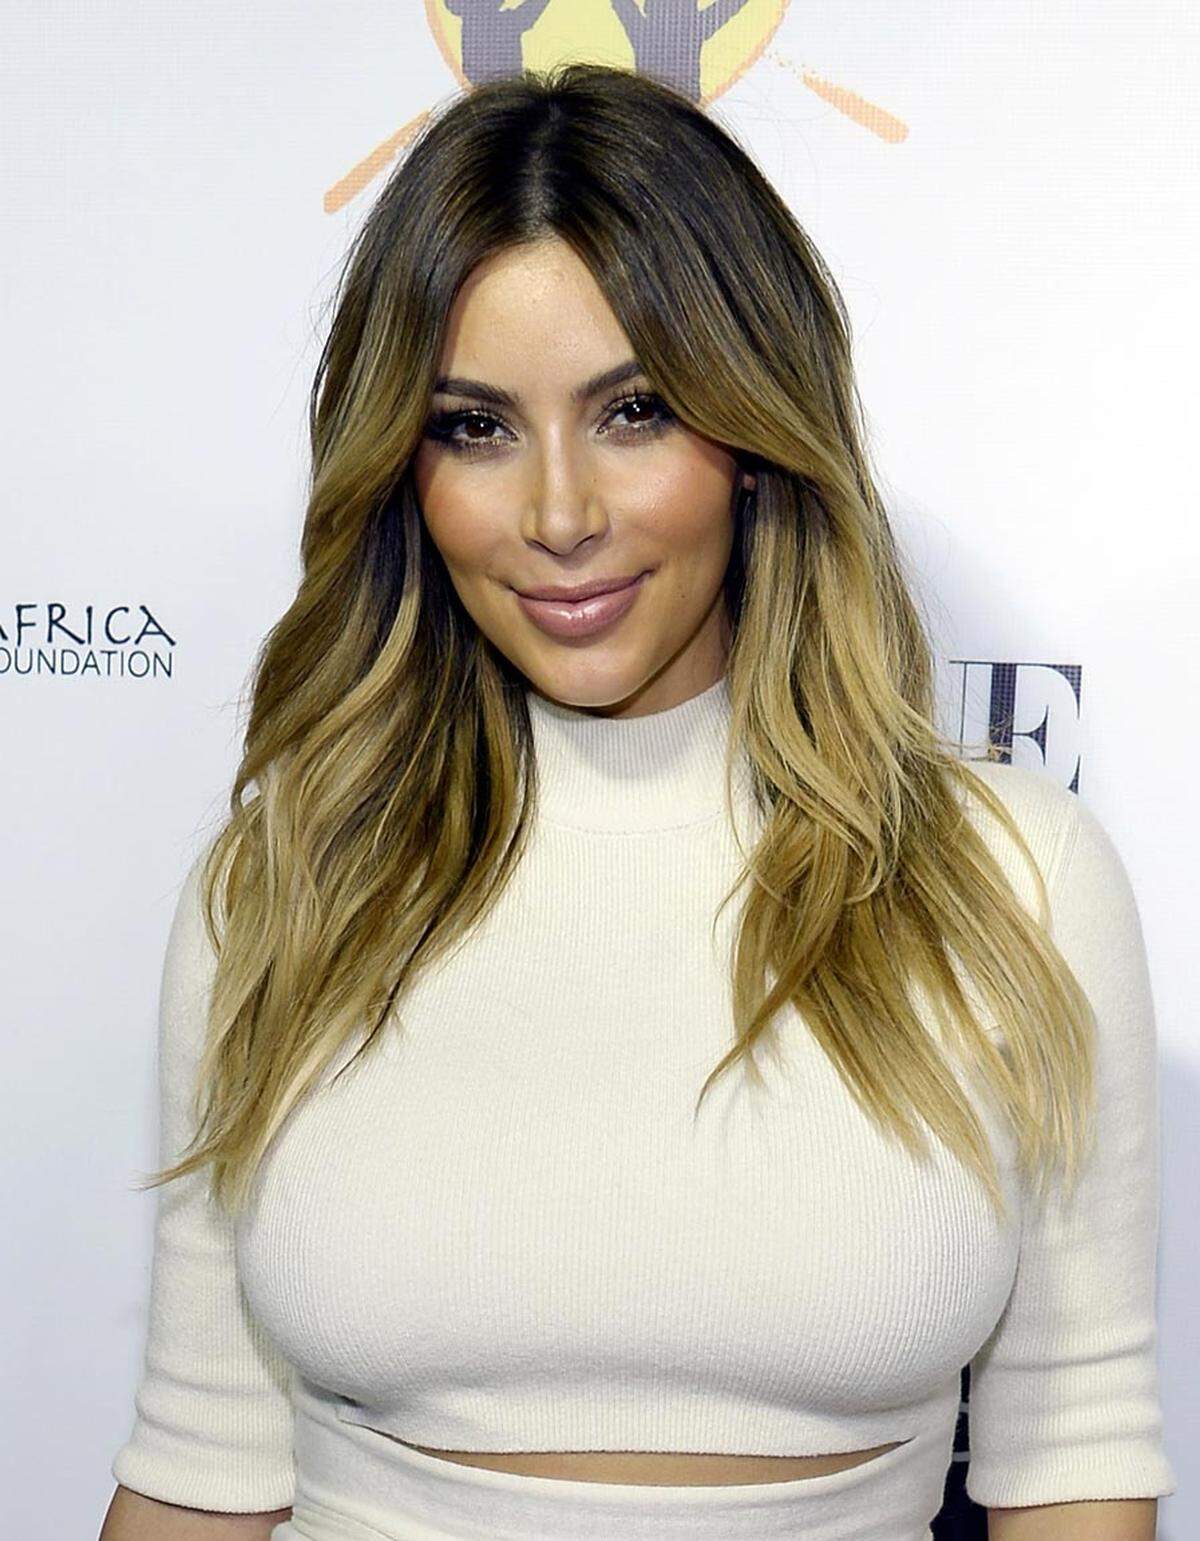 Mit makelloser Haut, vollen Lippen und hohen Wangenknochen kann Reality-TV-Star Kim Kardashian aufwarten.